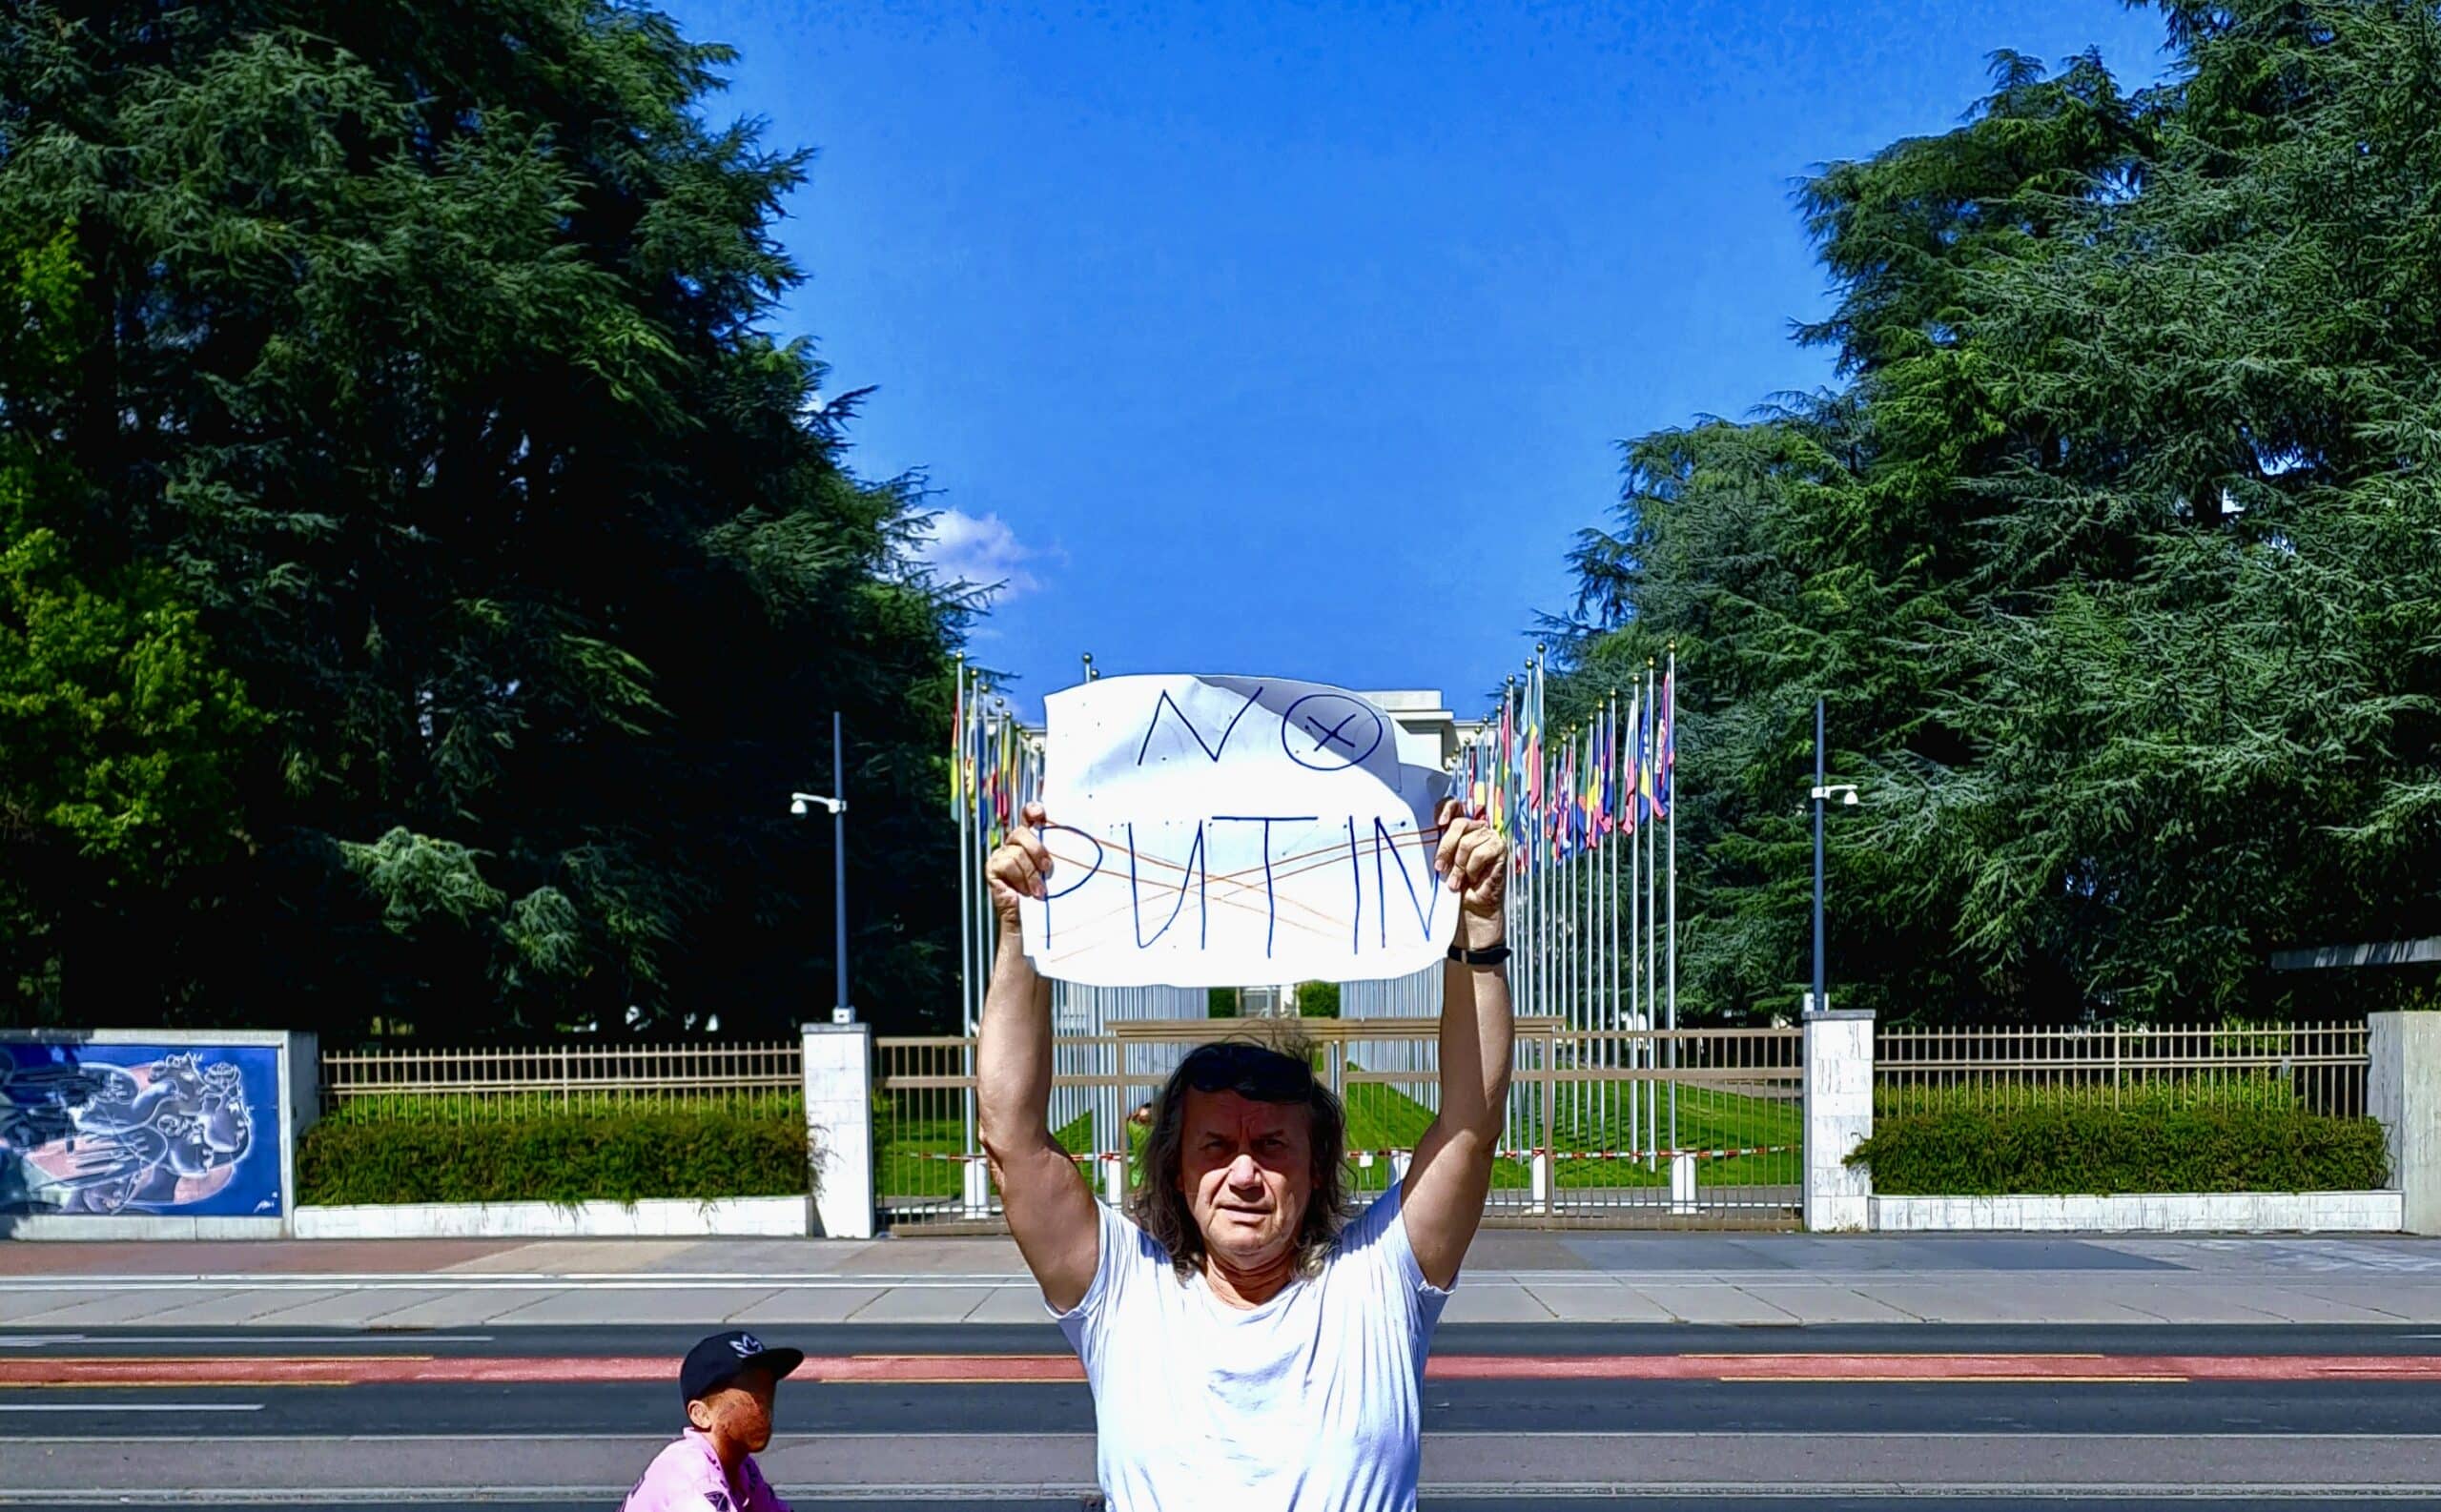 «No Putin!». Одиночный пикет Кисти Митенёва перед знанием ООН в Женеве. 20 августа 2023 г. (© kostя goldtv)